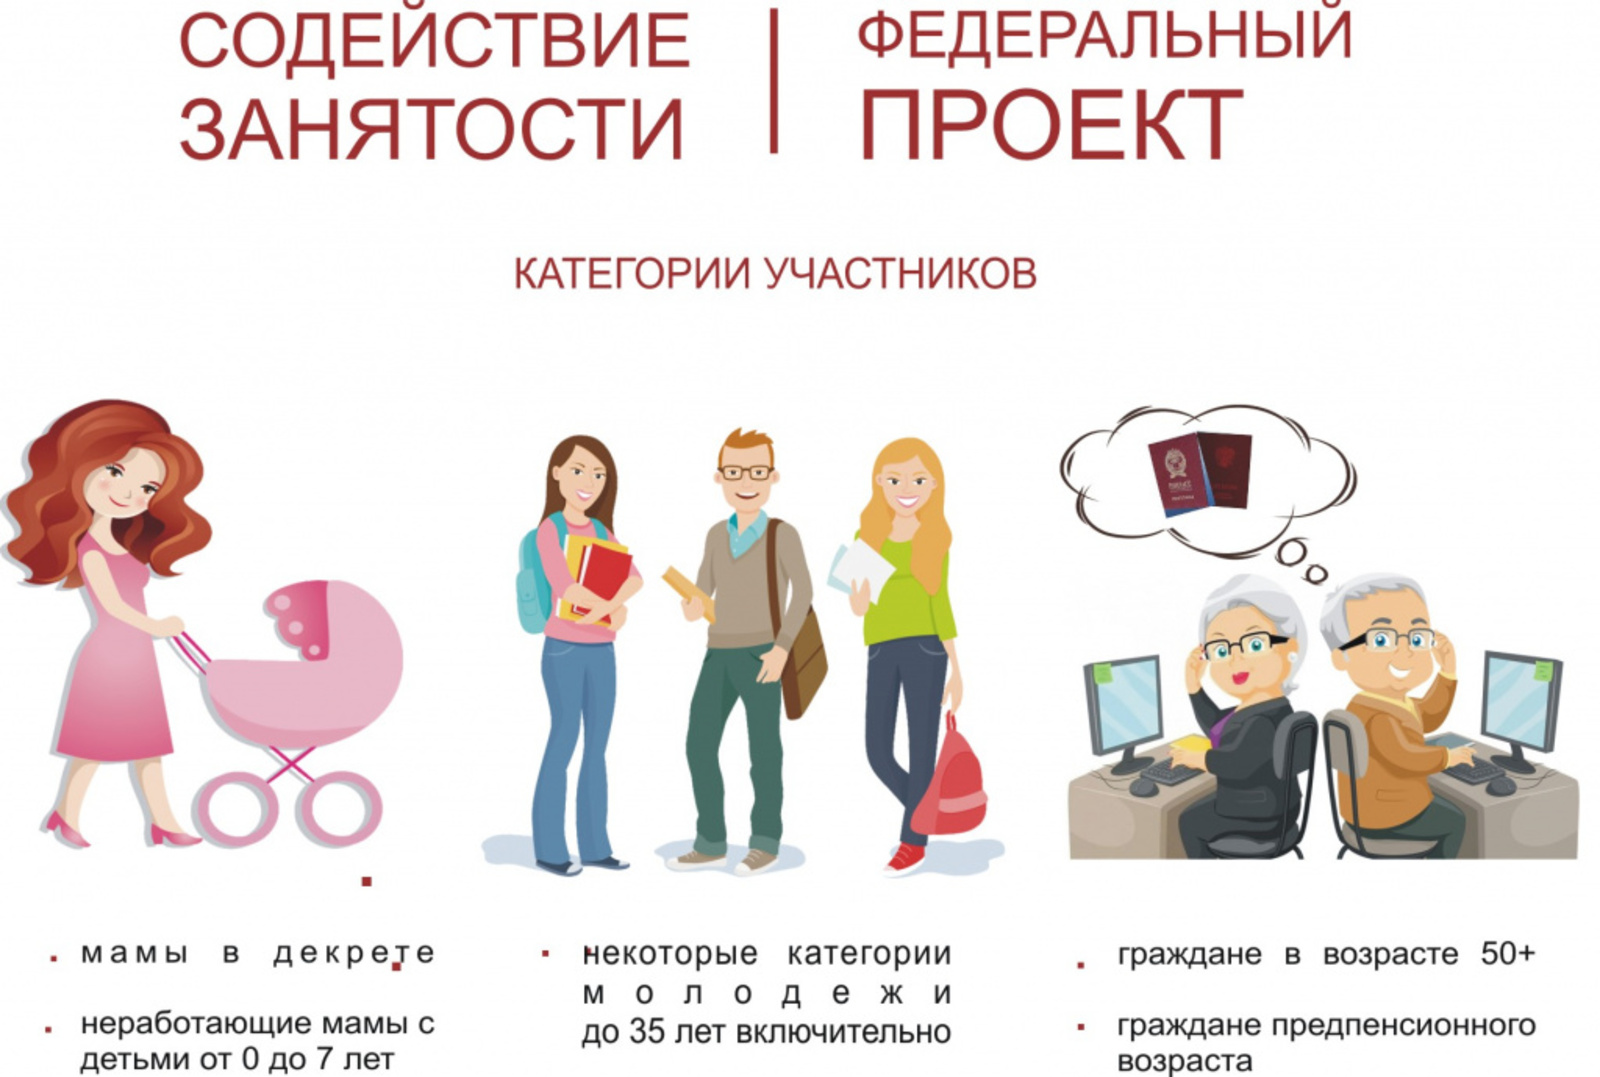 В прошлом году в Кумертау 103 человека получили новые знания с помощью портала «Работа в России»